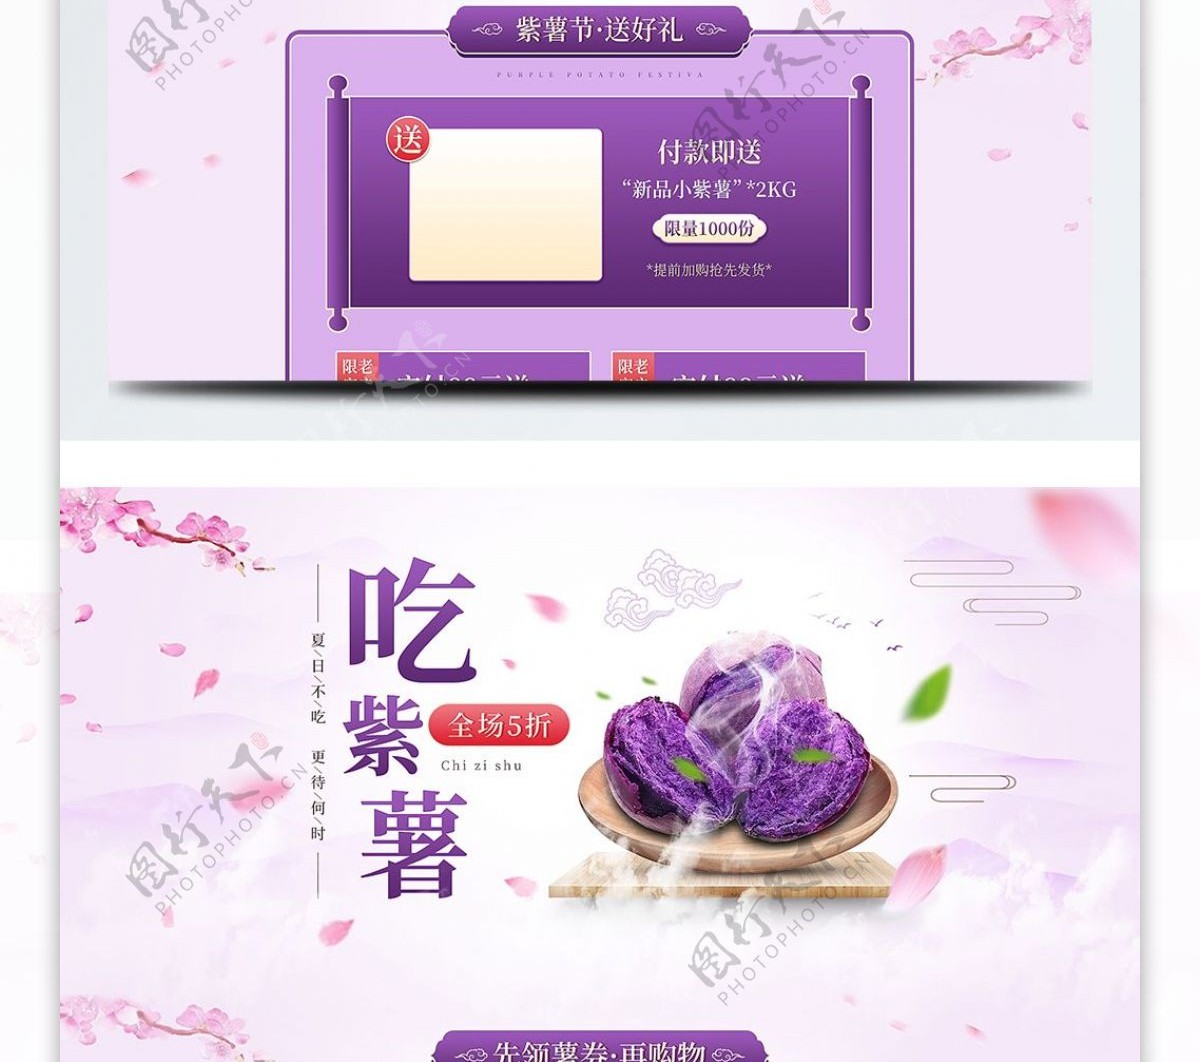 天猫淘宝紫薯首页模版食品首页模版